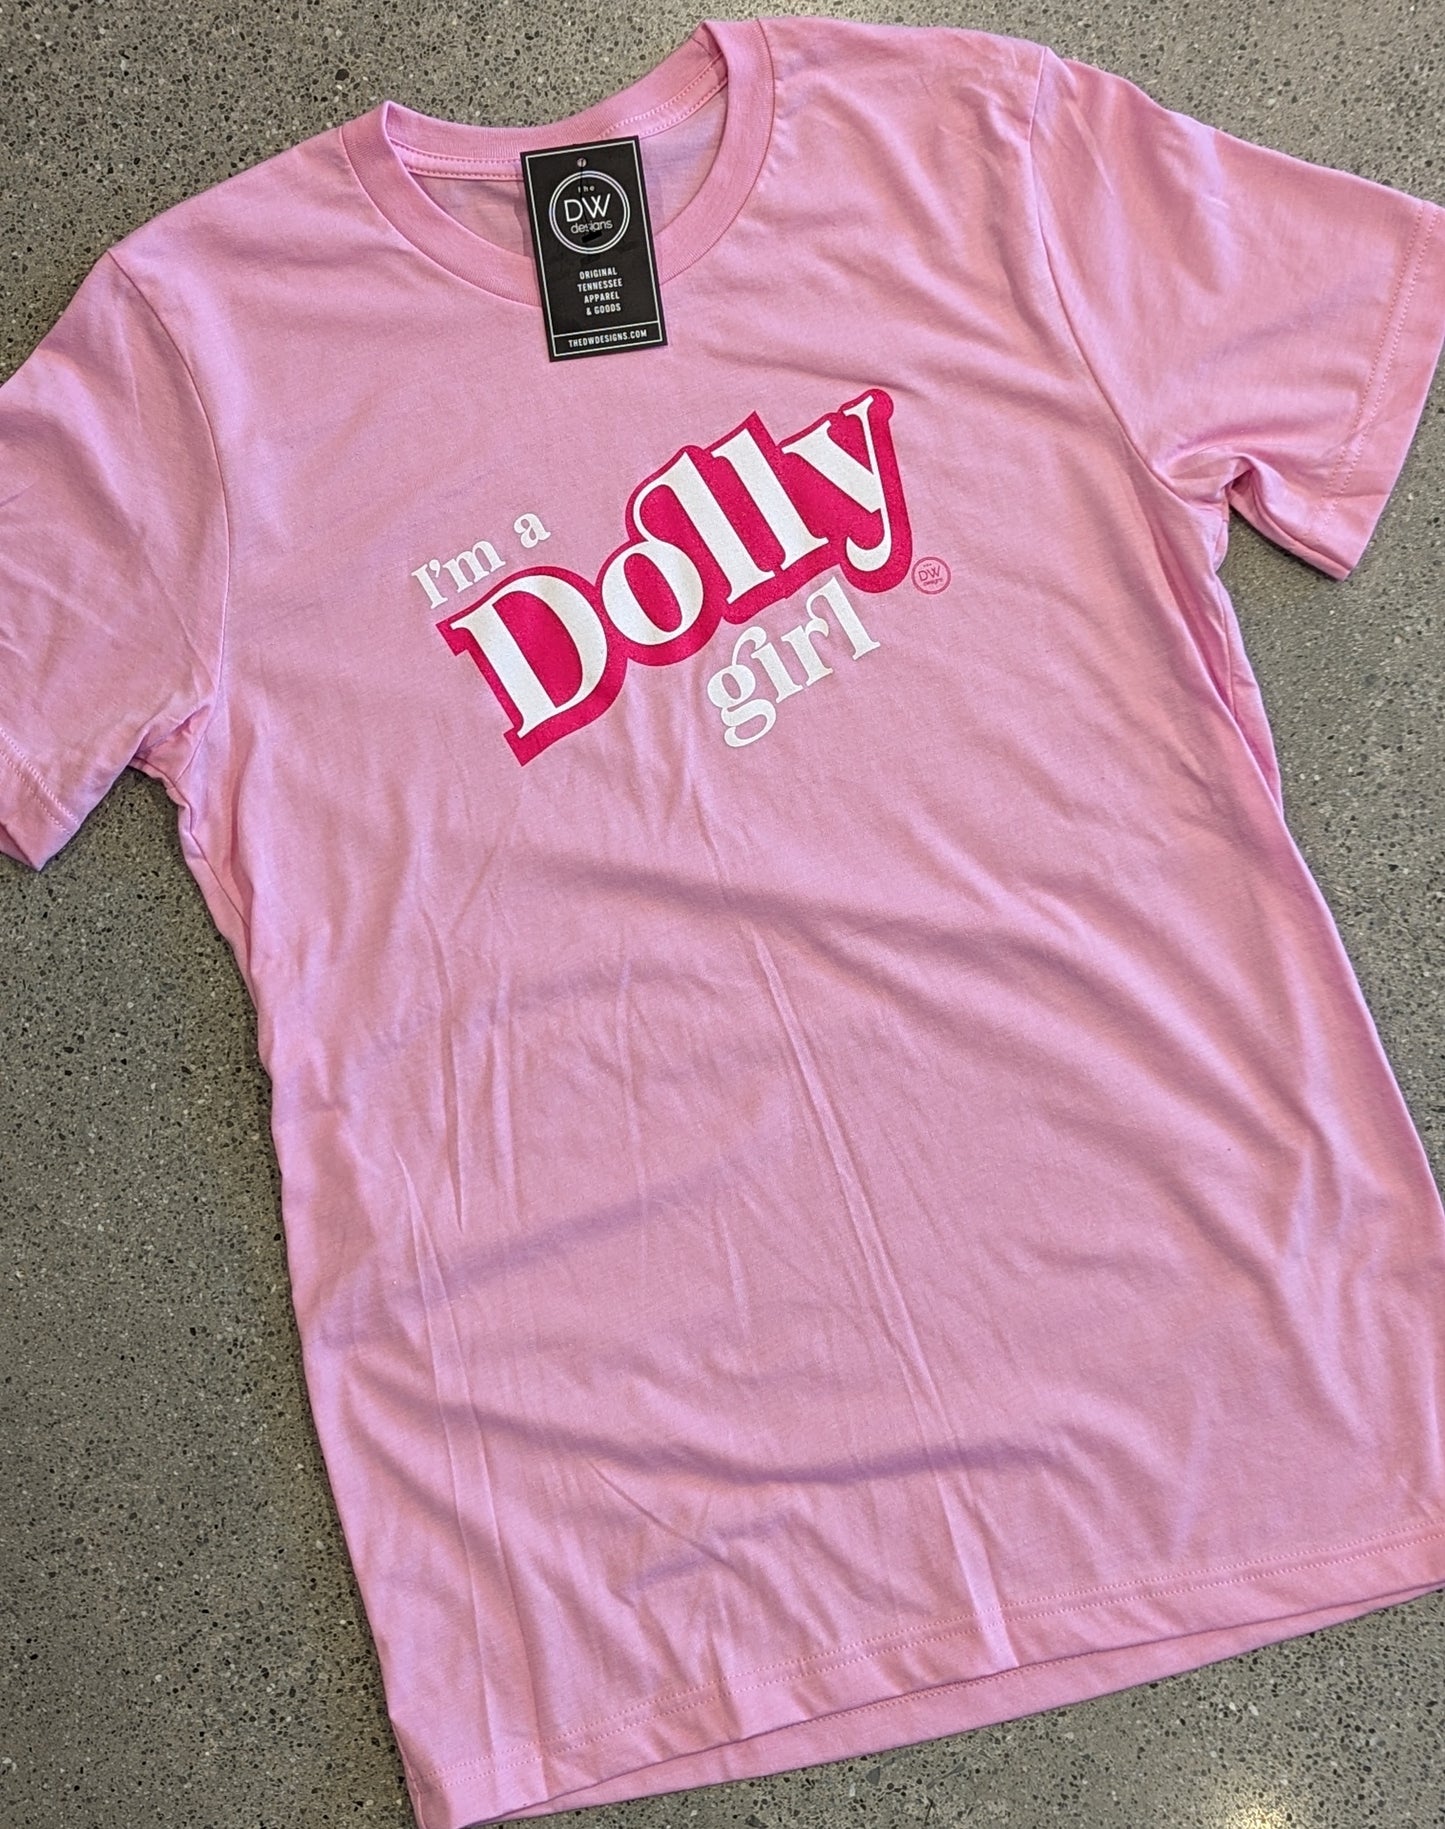 The Dolly Girl Tee